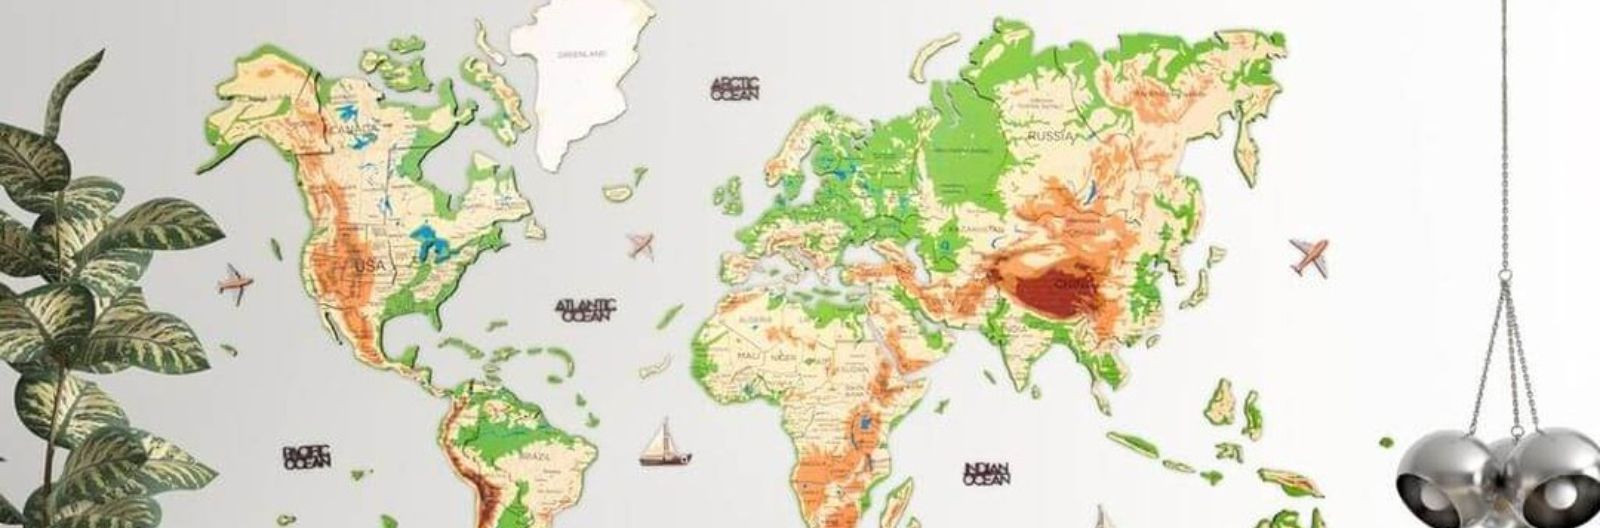 Külastatud riikide maailmakaart on viimasel ajal populaarseks saanud. See on kaart, mis kuvab riigid, mida inimene on oma elu jooksul külastanud. Kõige populaar